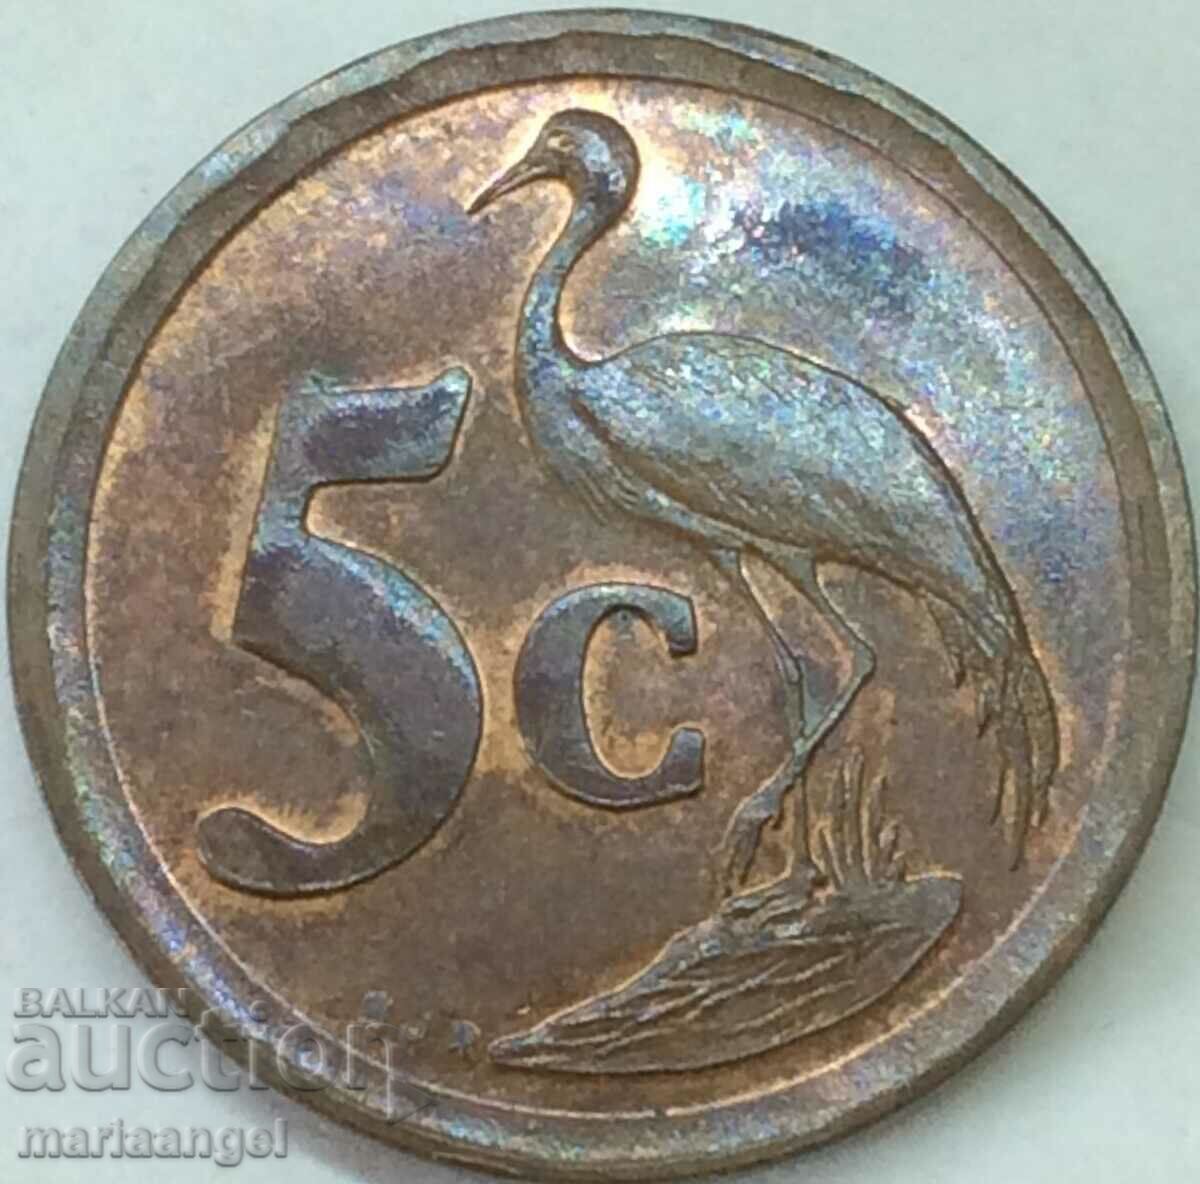 Africa de Sud 5 cenți 1993